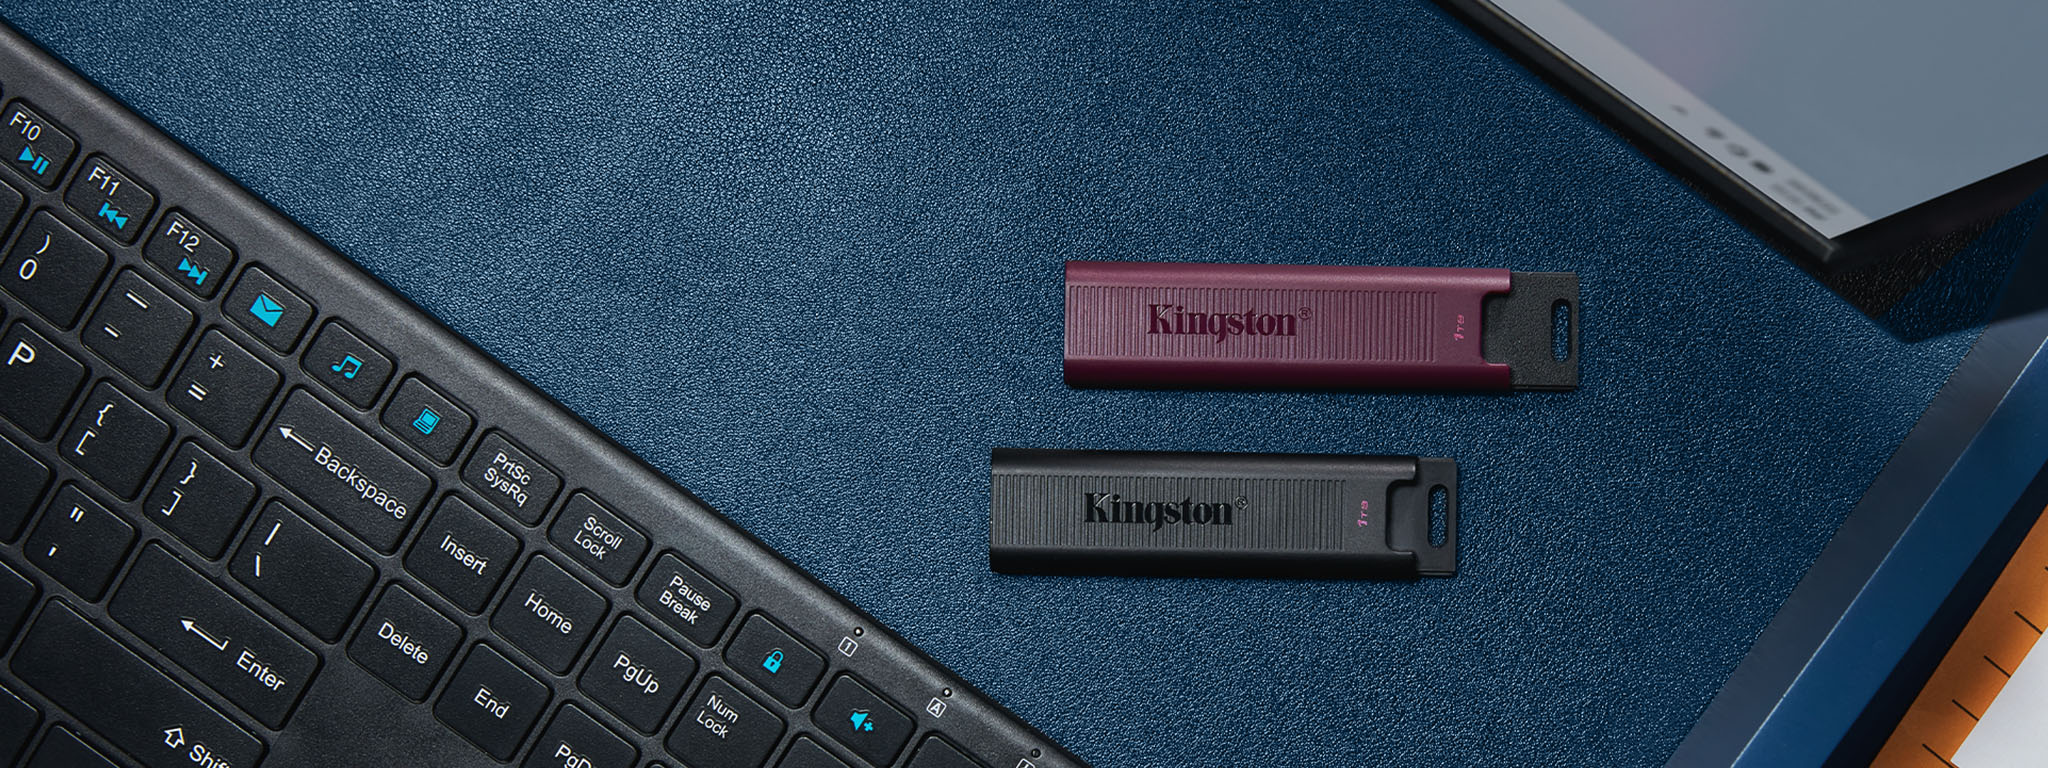 ภาพมุมสูงของแฟลชไดรฟ์ DT Max สีดำสำหรับพอร์ต USB-C และสีแดงเบอร์กันดีสำหรับพอร์ต USB-A วางอยู่ตรงกลางระหว่างแป้นพิมพ์กับหน้าจอ